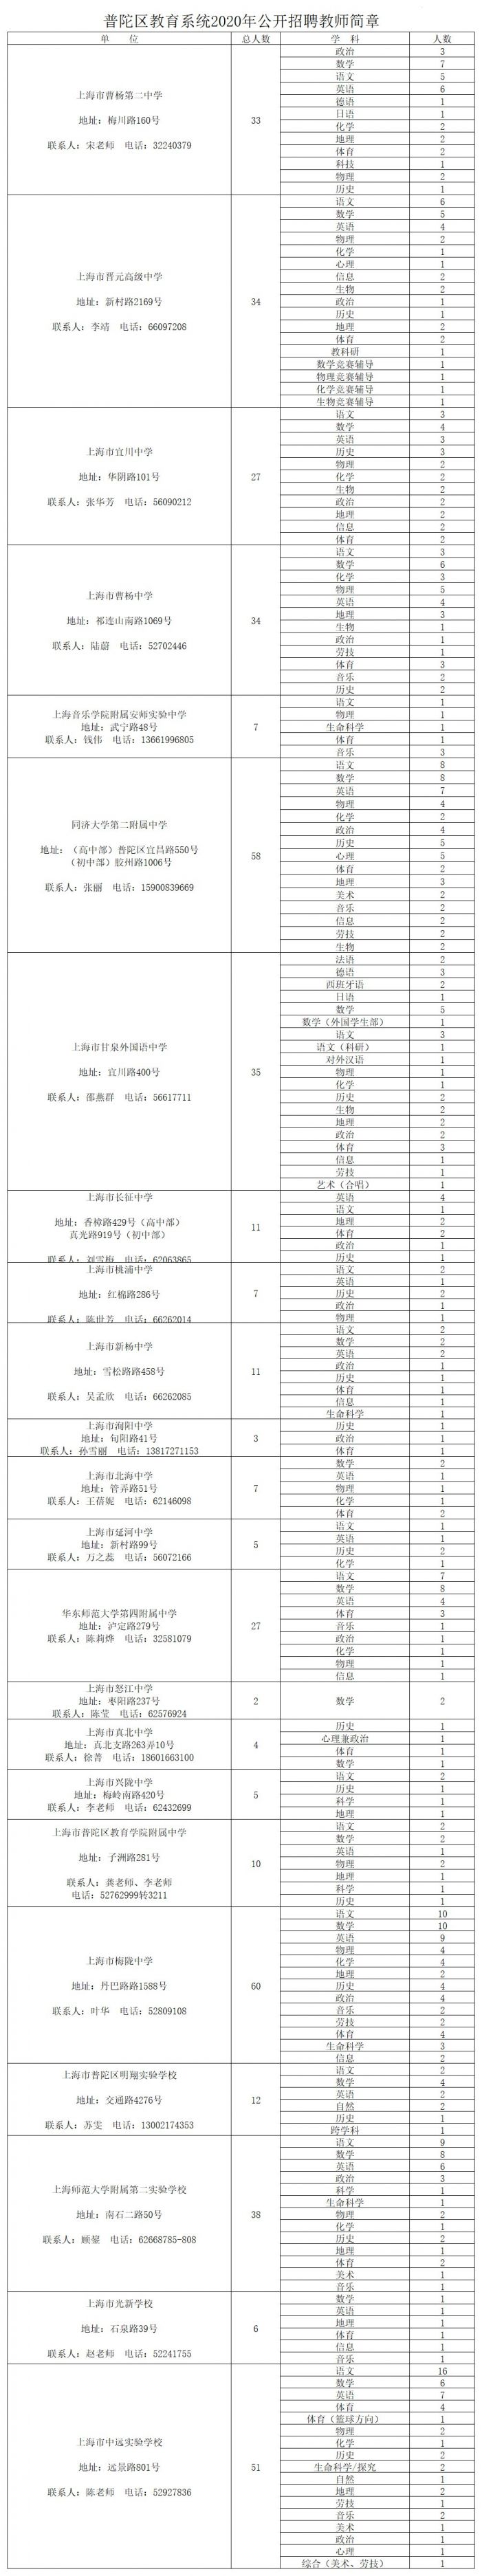 上海普陀区公开招聘1254名教师(附详情)